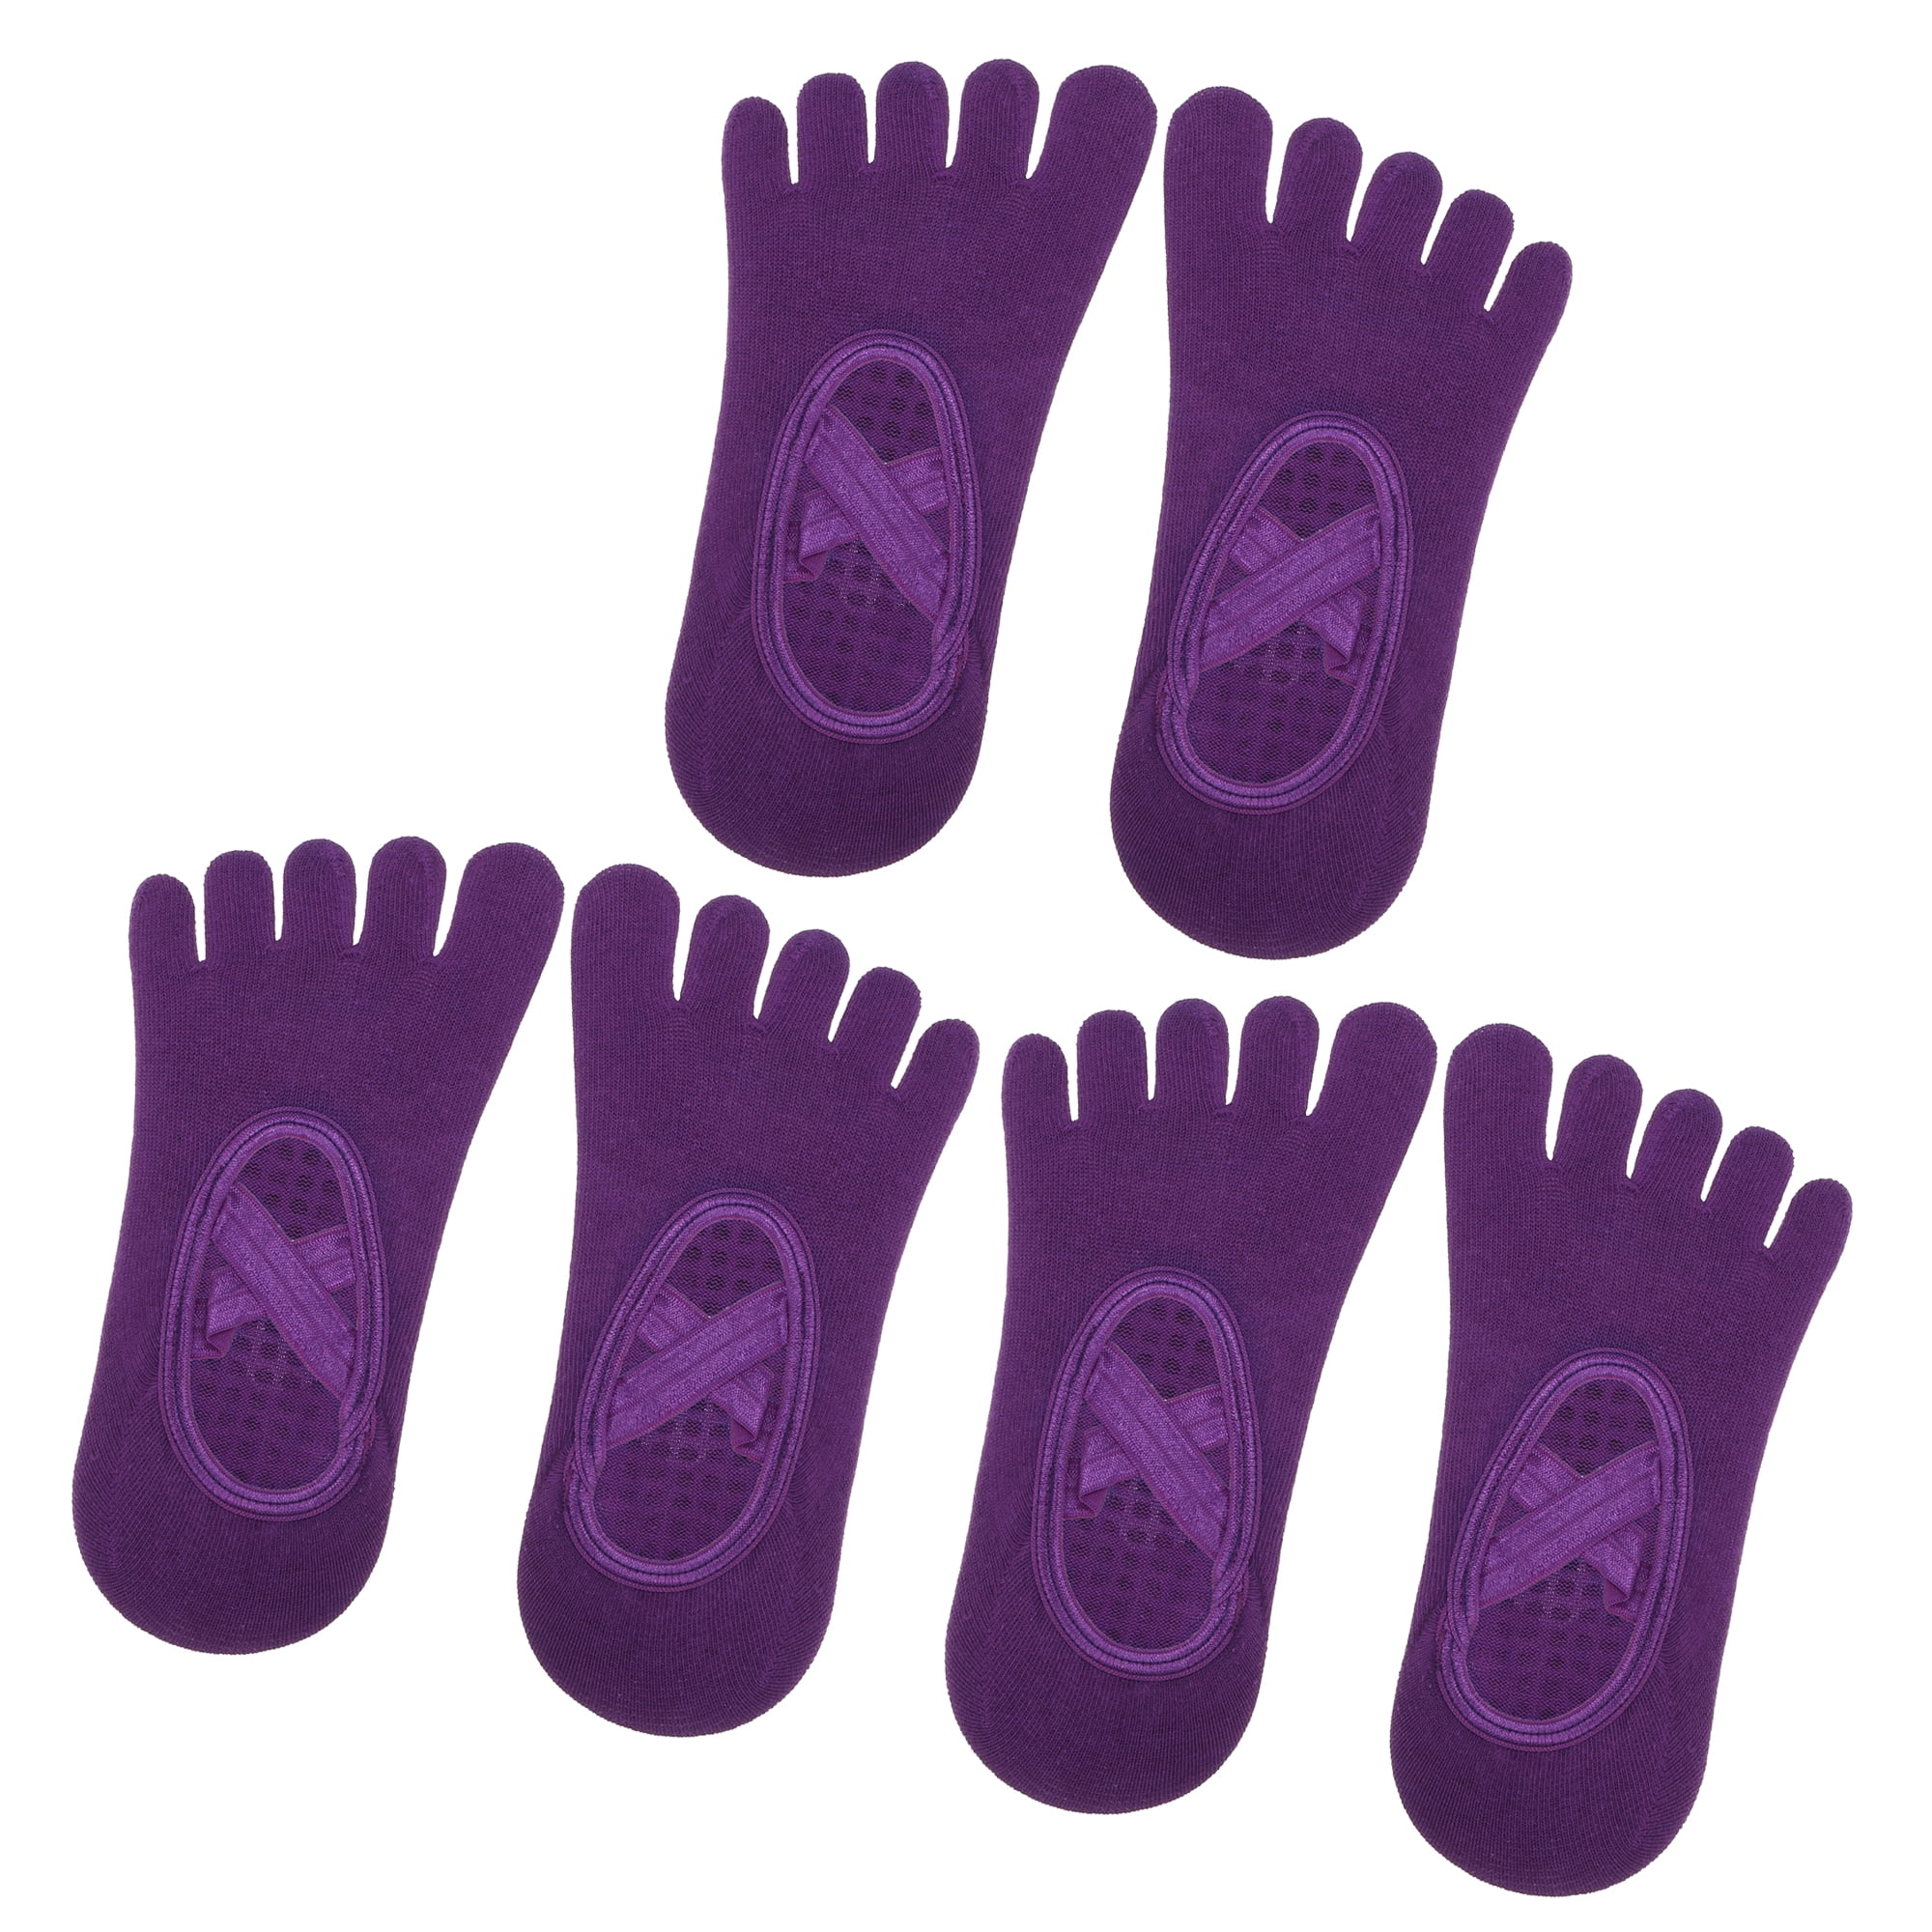 Unique Bargains 3 Pair Yoga Socks Five Toe Socks Non Slip Pilates Barre  Ballet Socks Light Gray for Women with Grips 